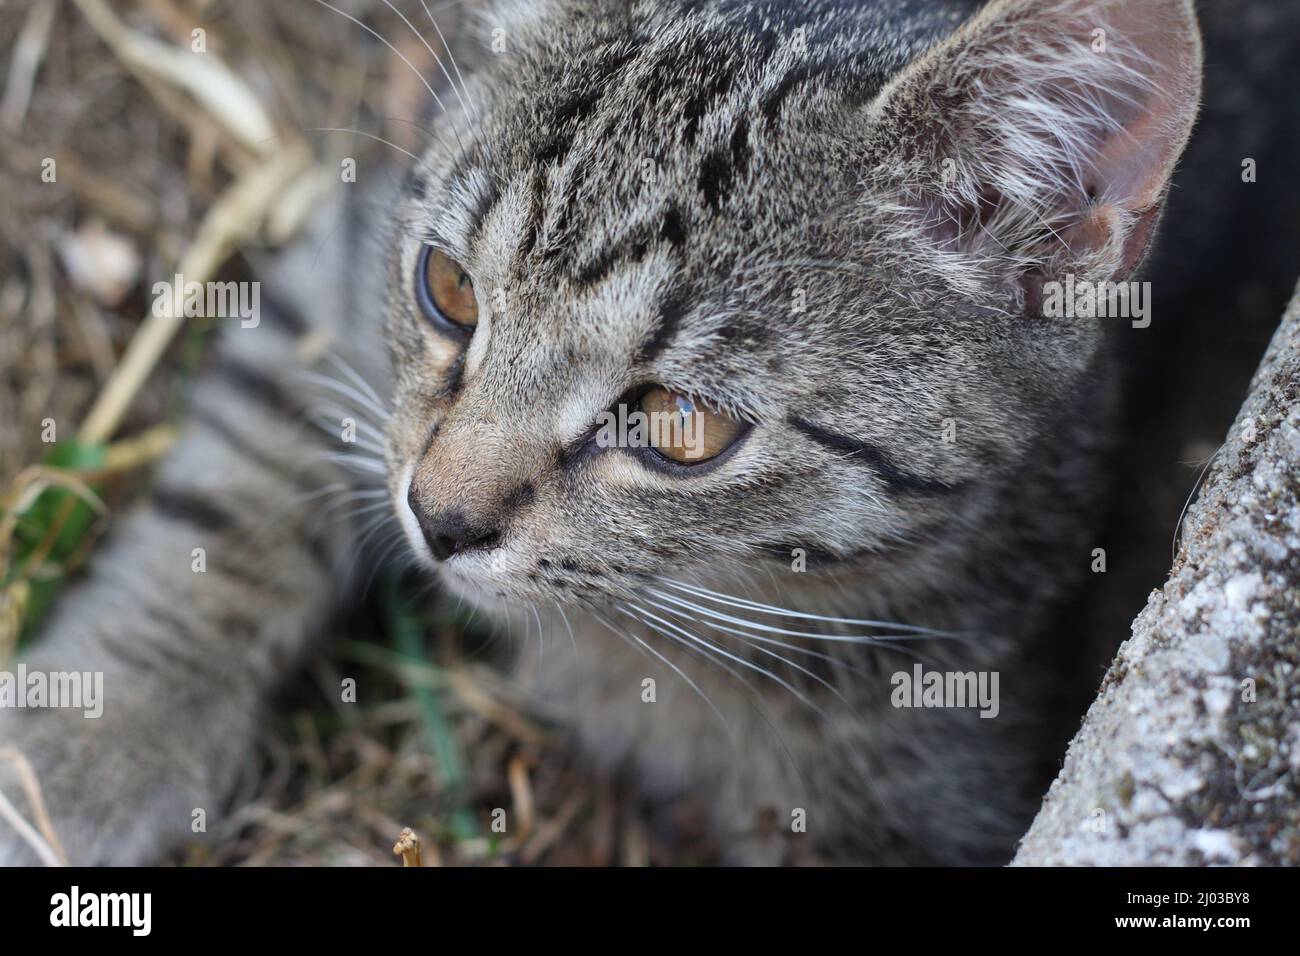 Portraits von jungen Katzen. Tschechien. Stock Photo